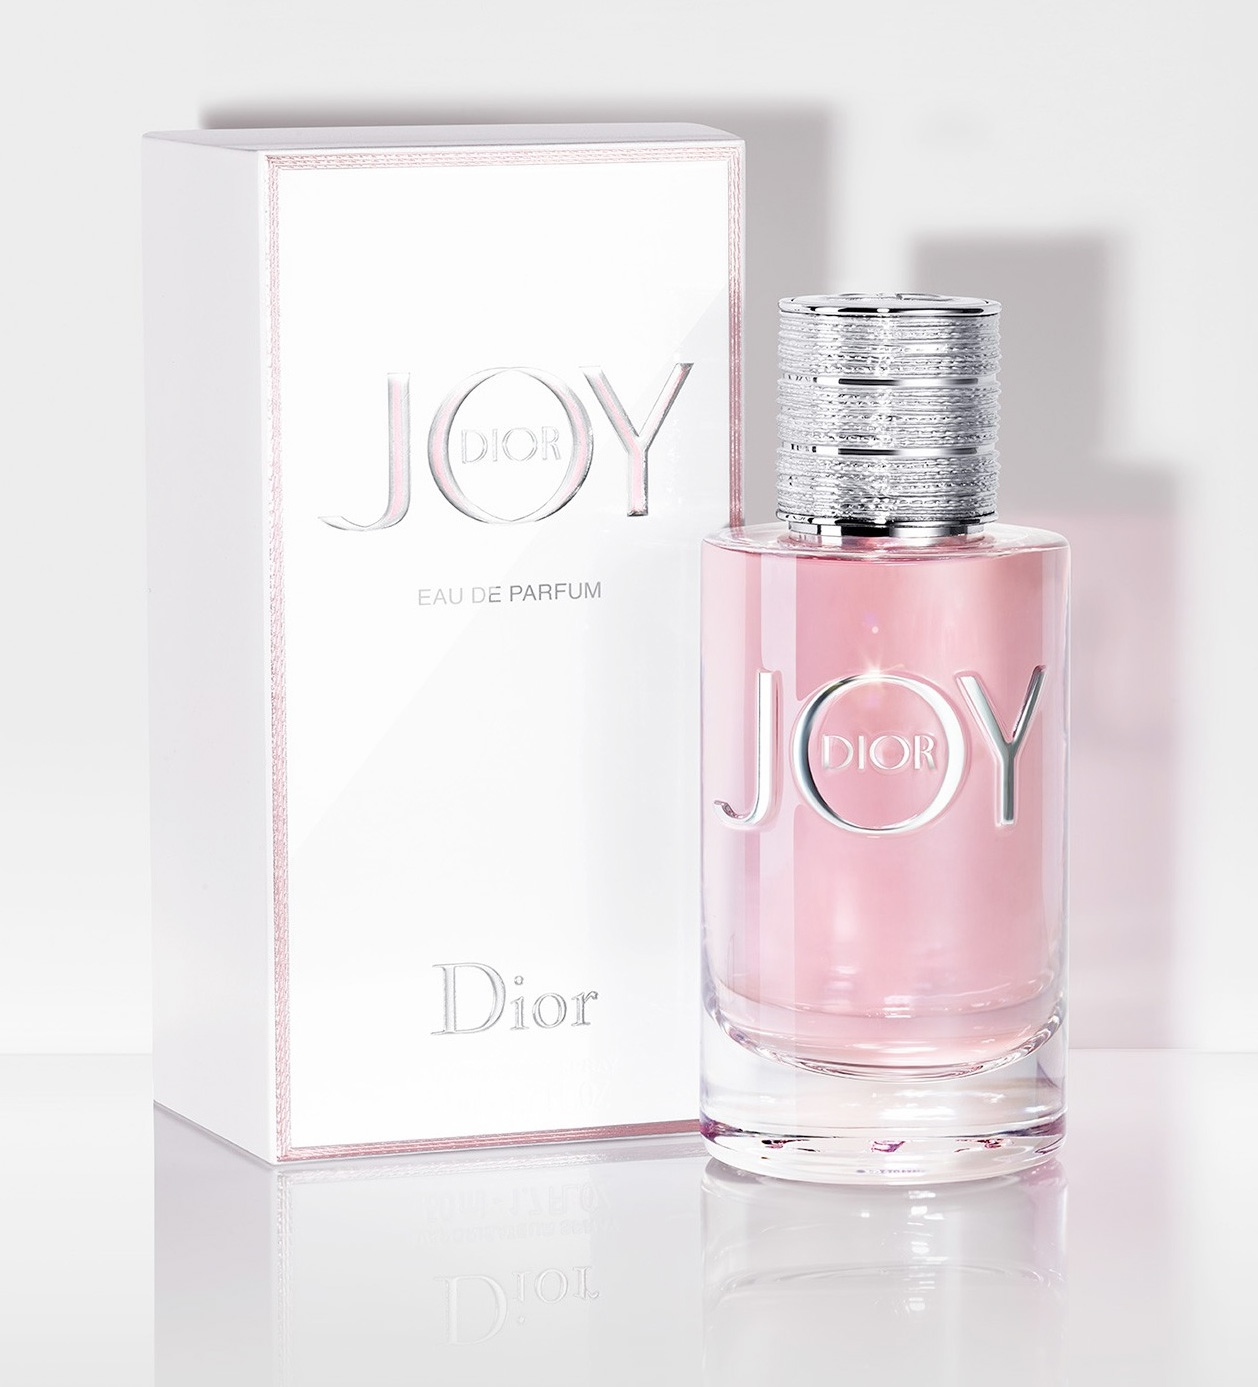 dior joy review